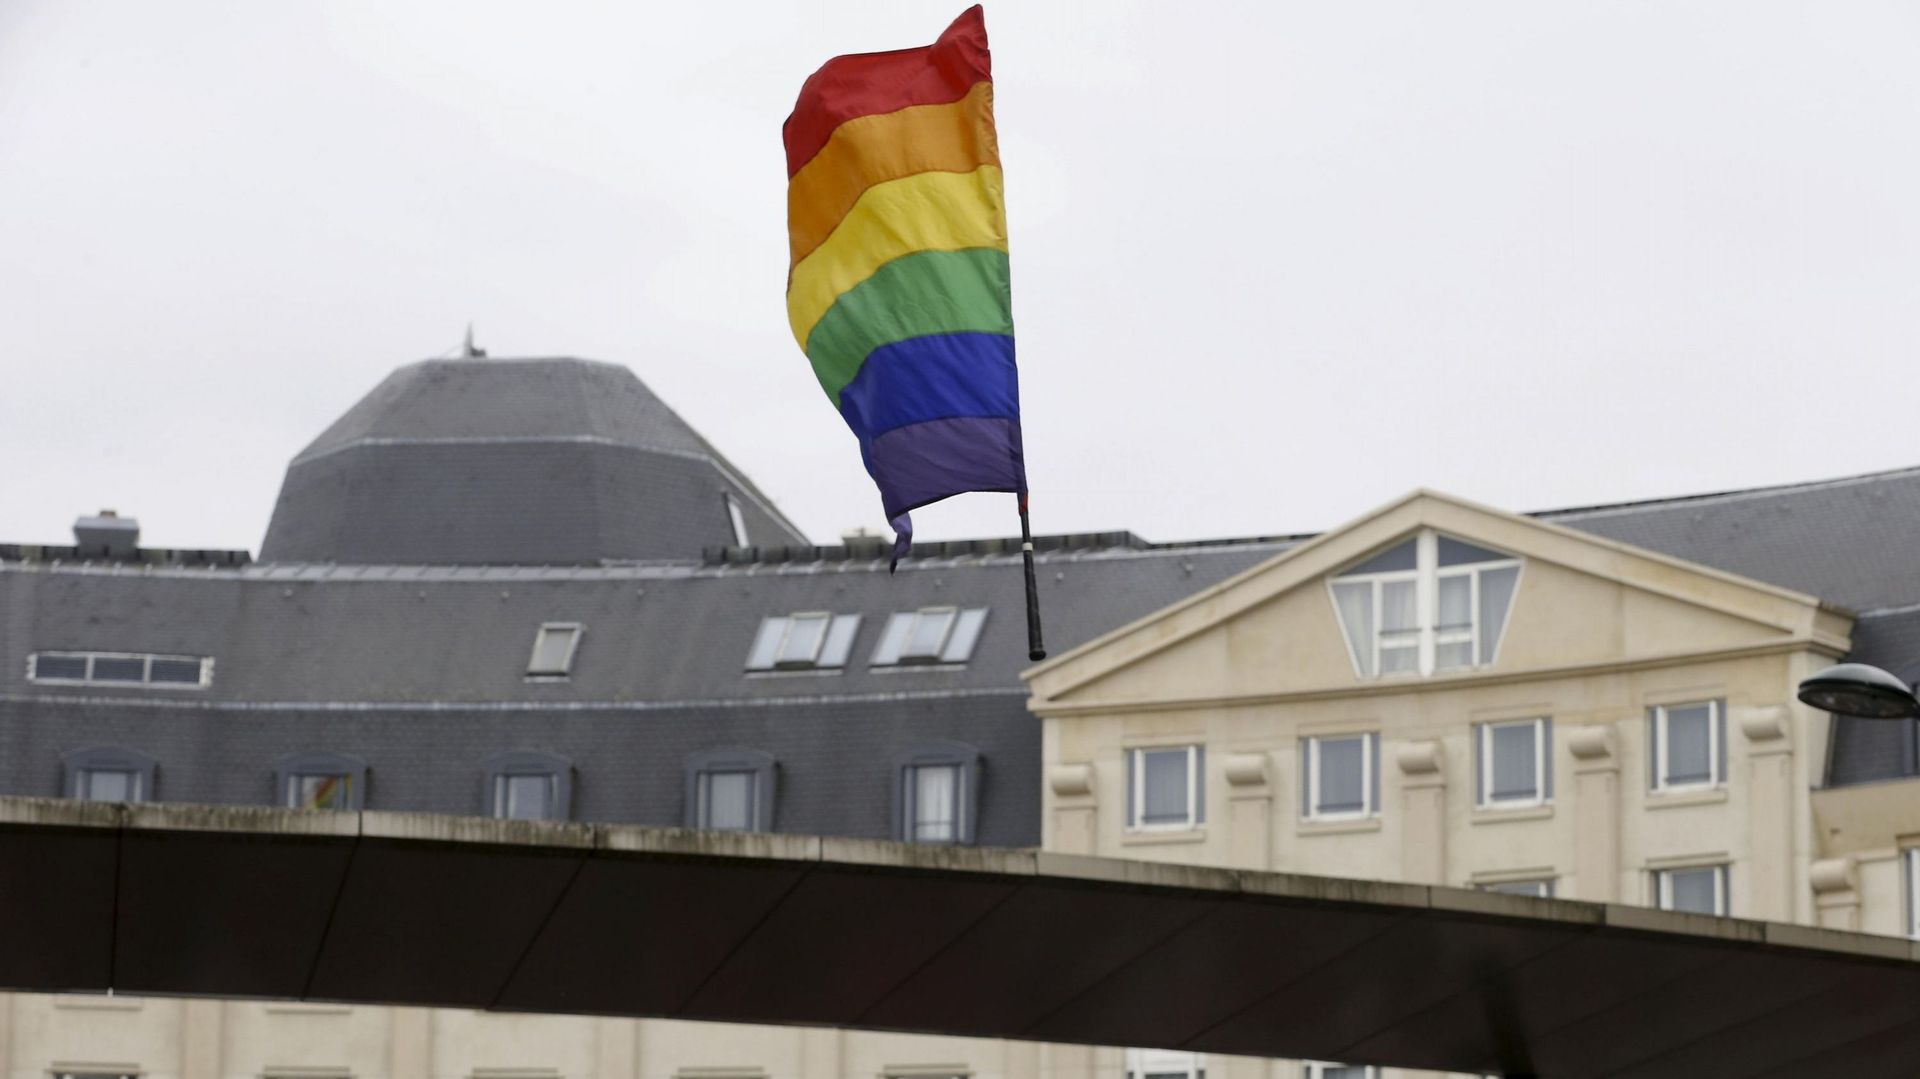 Agression à caractère homophobe à Bruxelles au lendemain de la Pride Parade